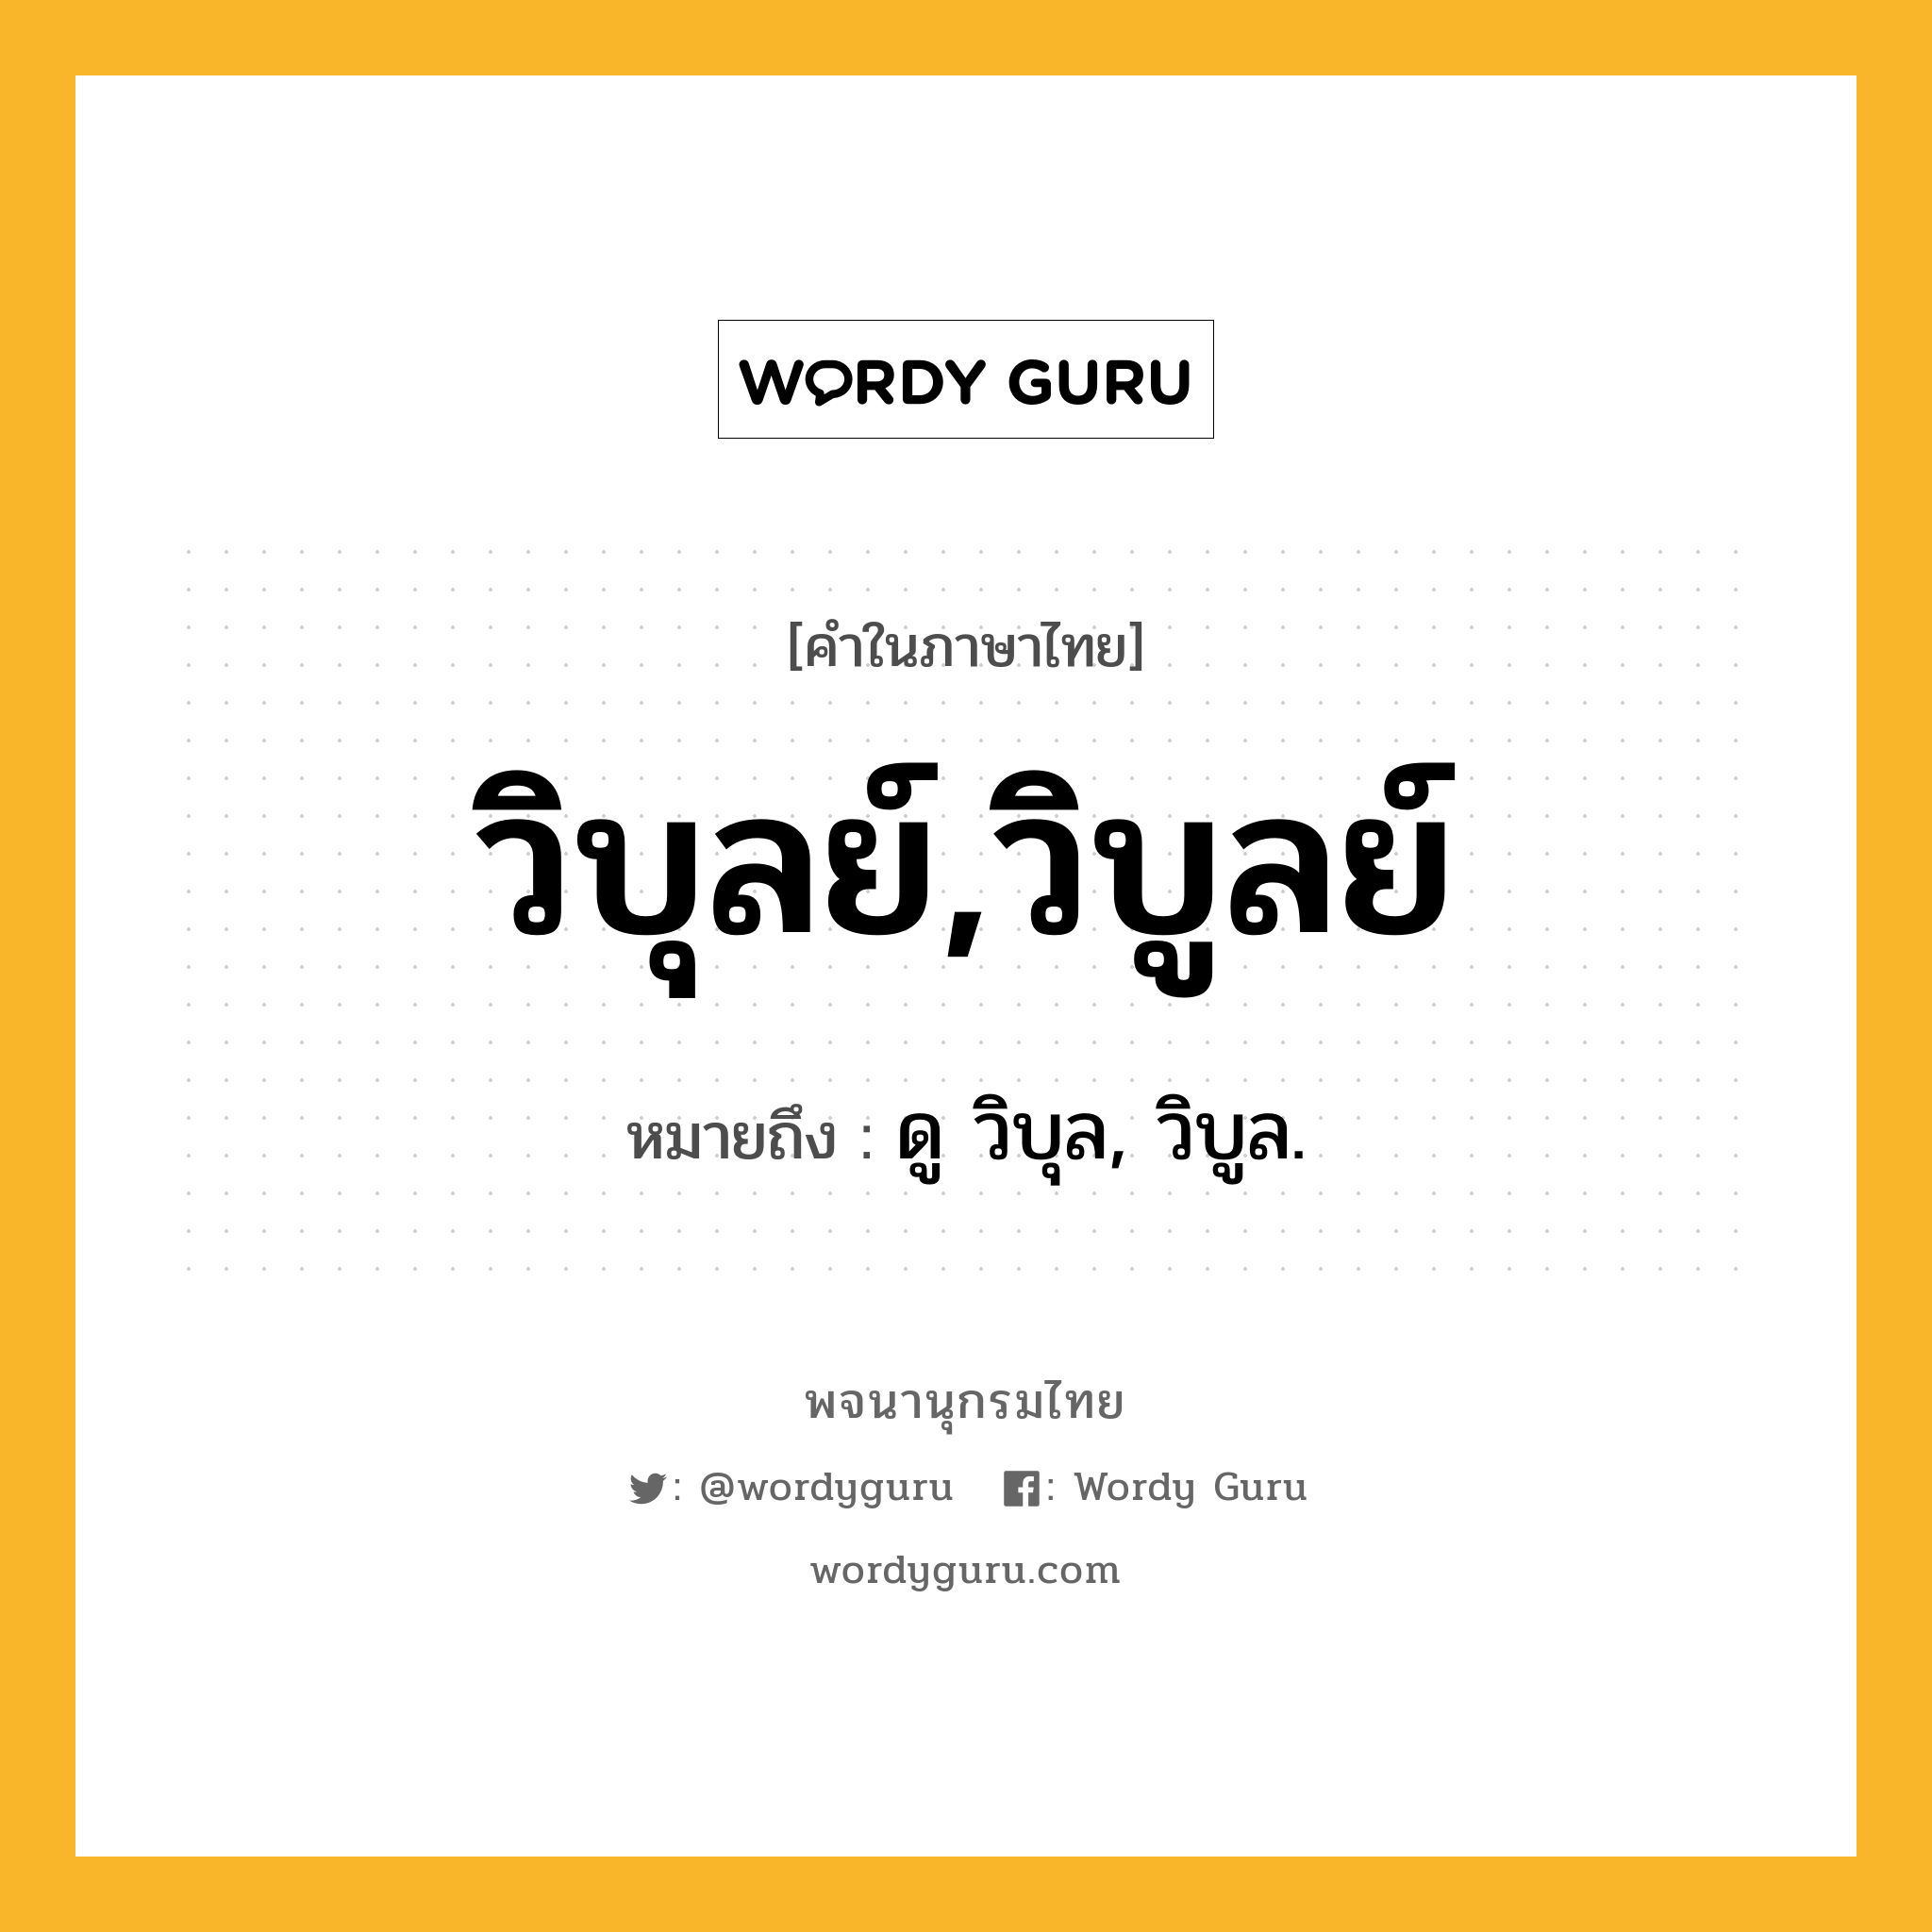 วิบุลย์,วิบูลย์ ความหมาย หมายถึงอะไร?, คำในภาษาไทย วิบุลย์,วิบูลย์ หมายถึง ดู วิบุล, วิบูล.